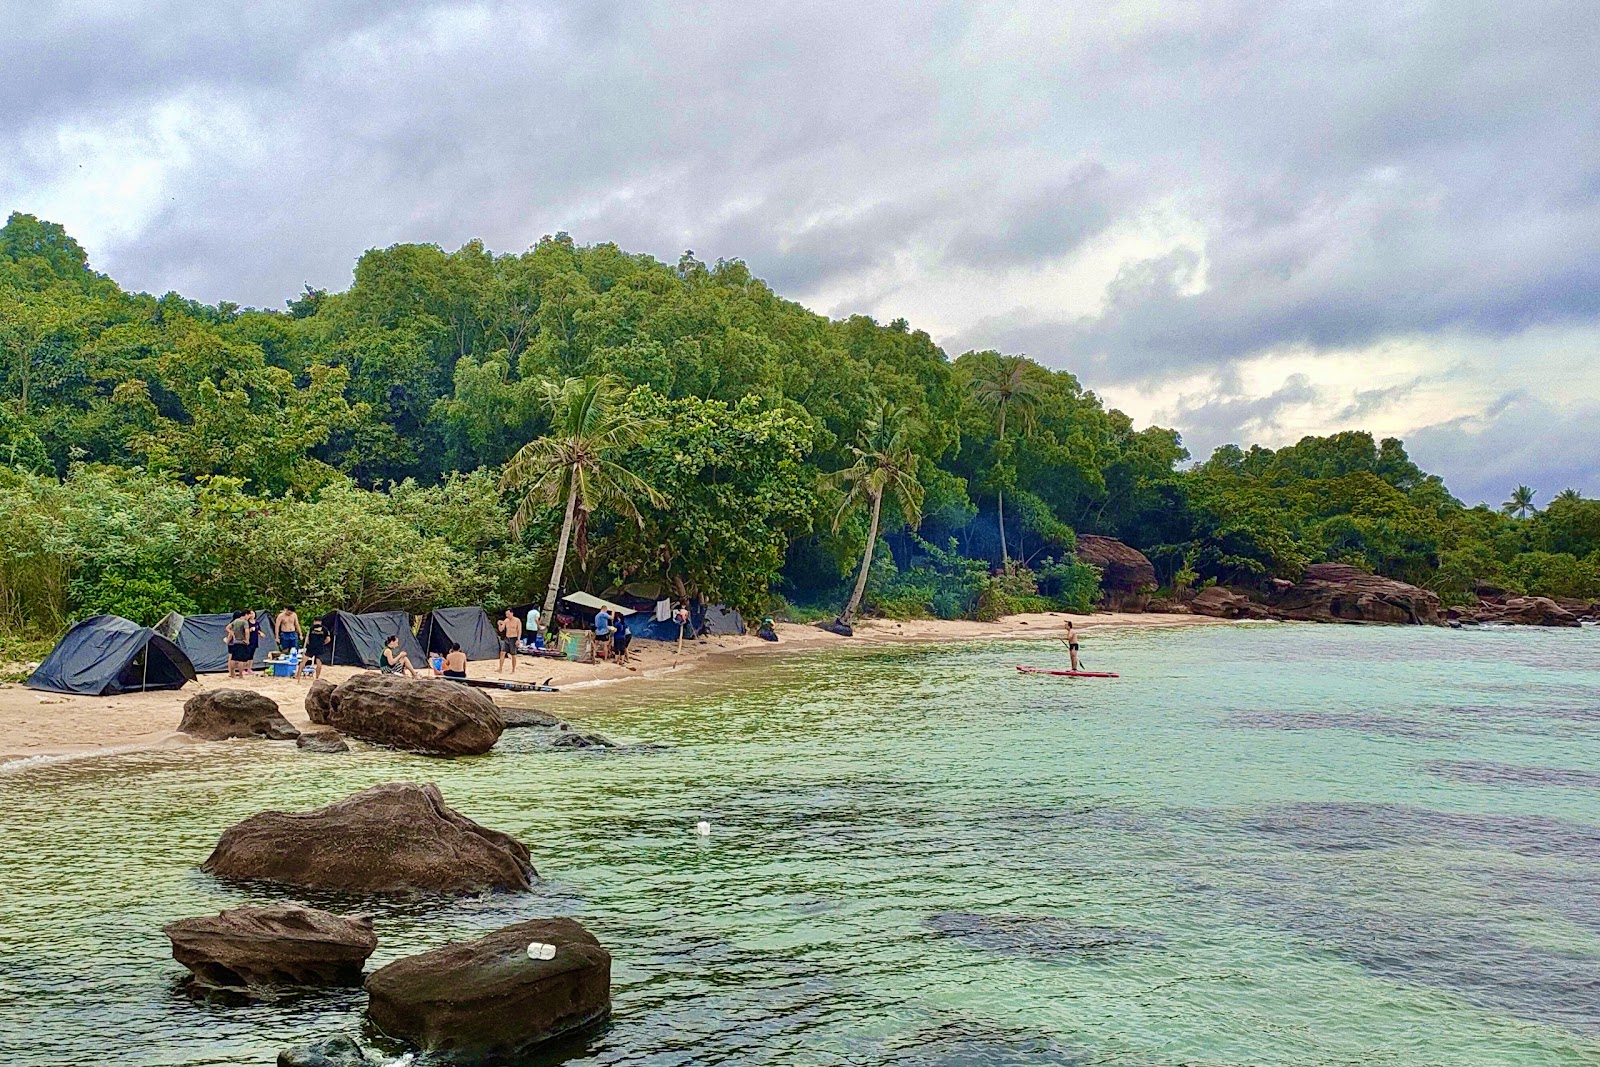 Foto di Gam Ghi island Beach ubicato in zona naturale